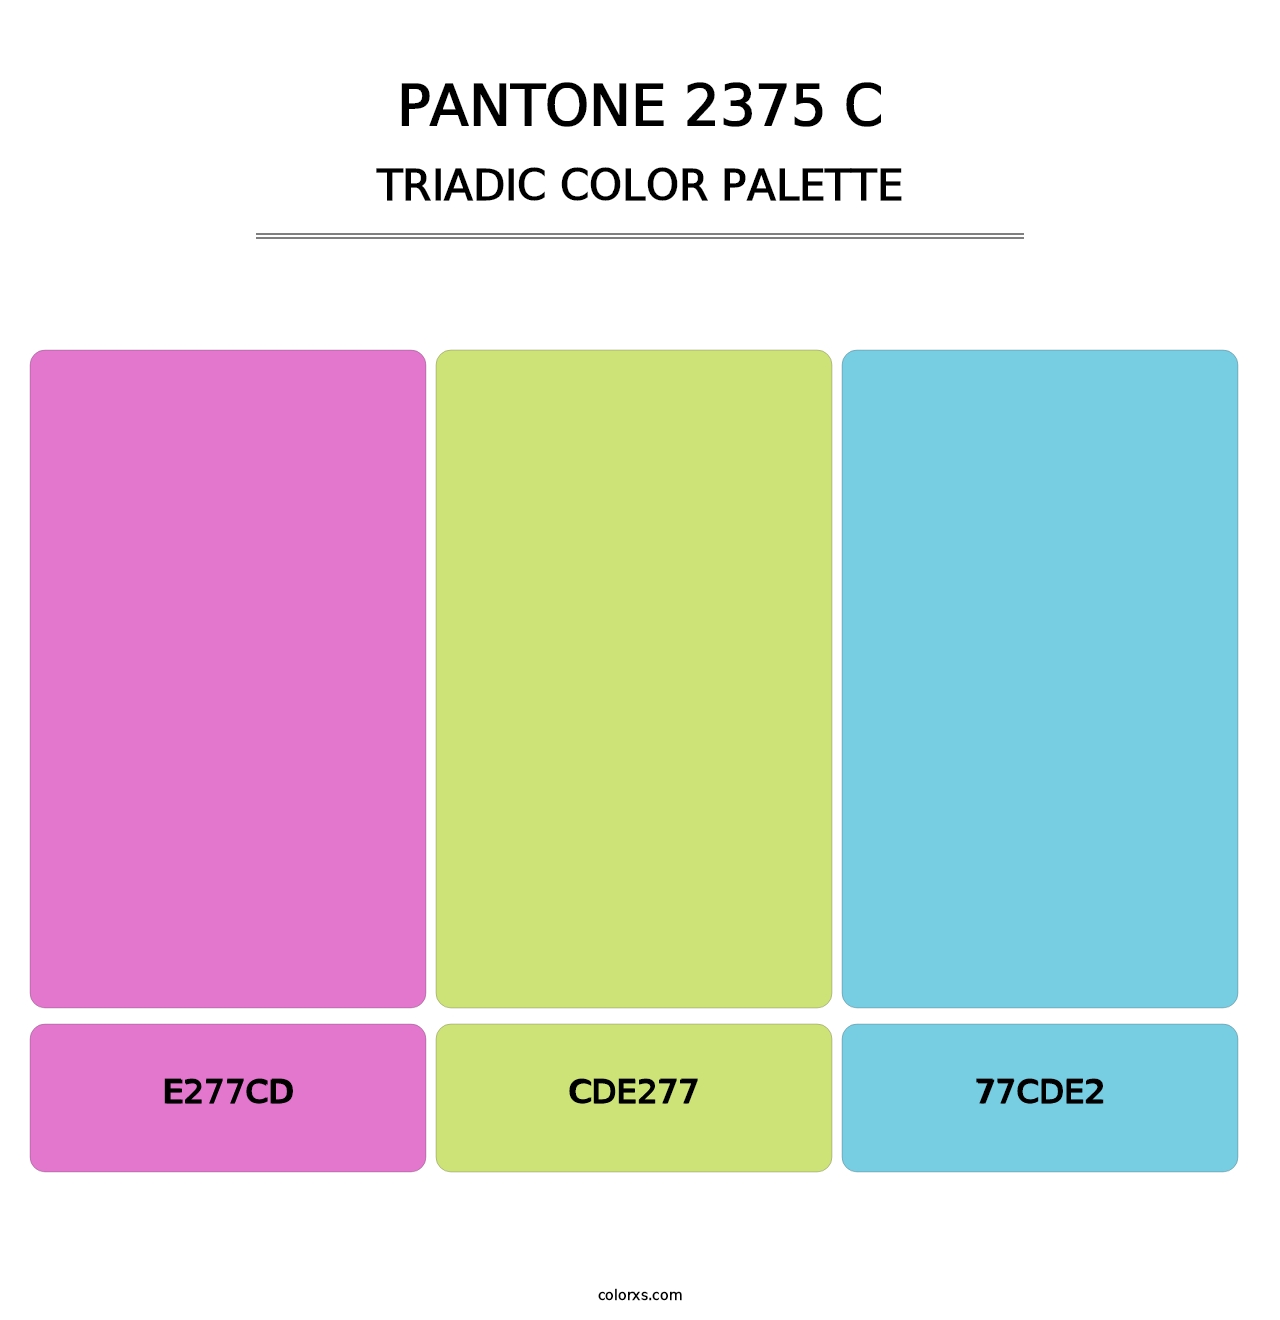 PANTONE 2375 C - Triadic Color Palette